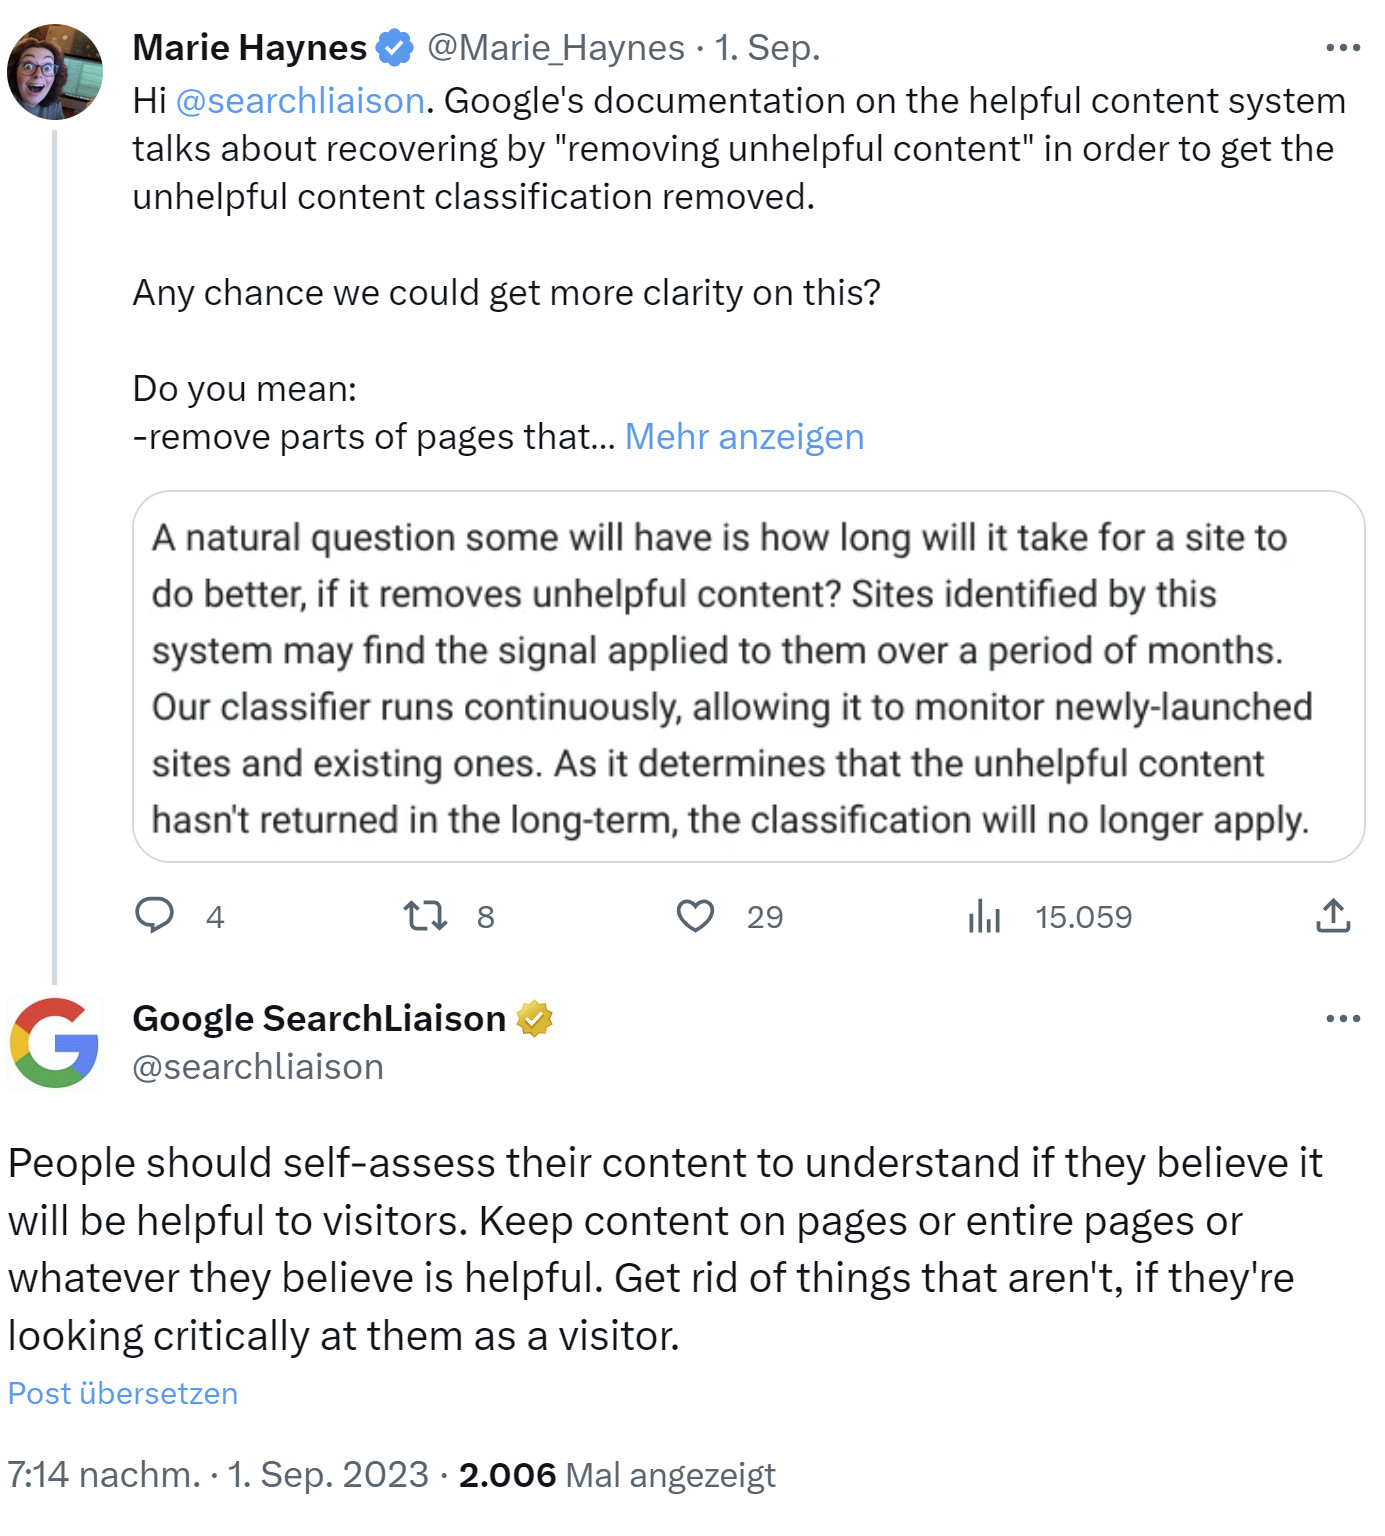 Google: Sollte man bei nicht hilfreichen Inhalten nur bestimmte Bereiche von Seiten löschen oder komplette Seiten entfernen?